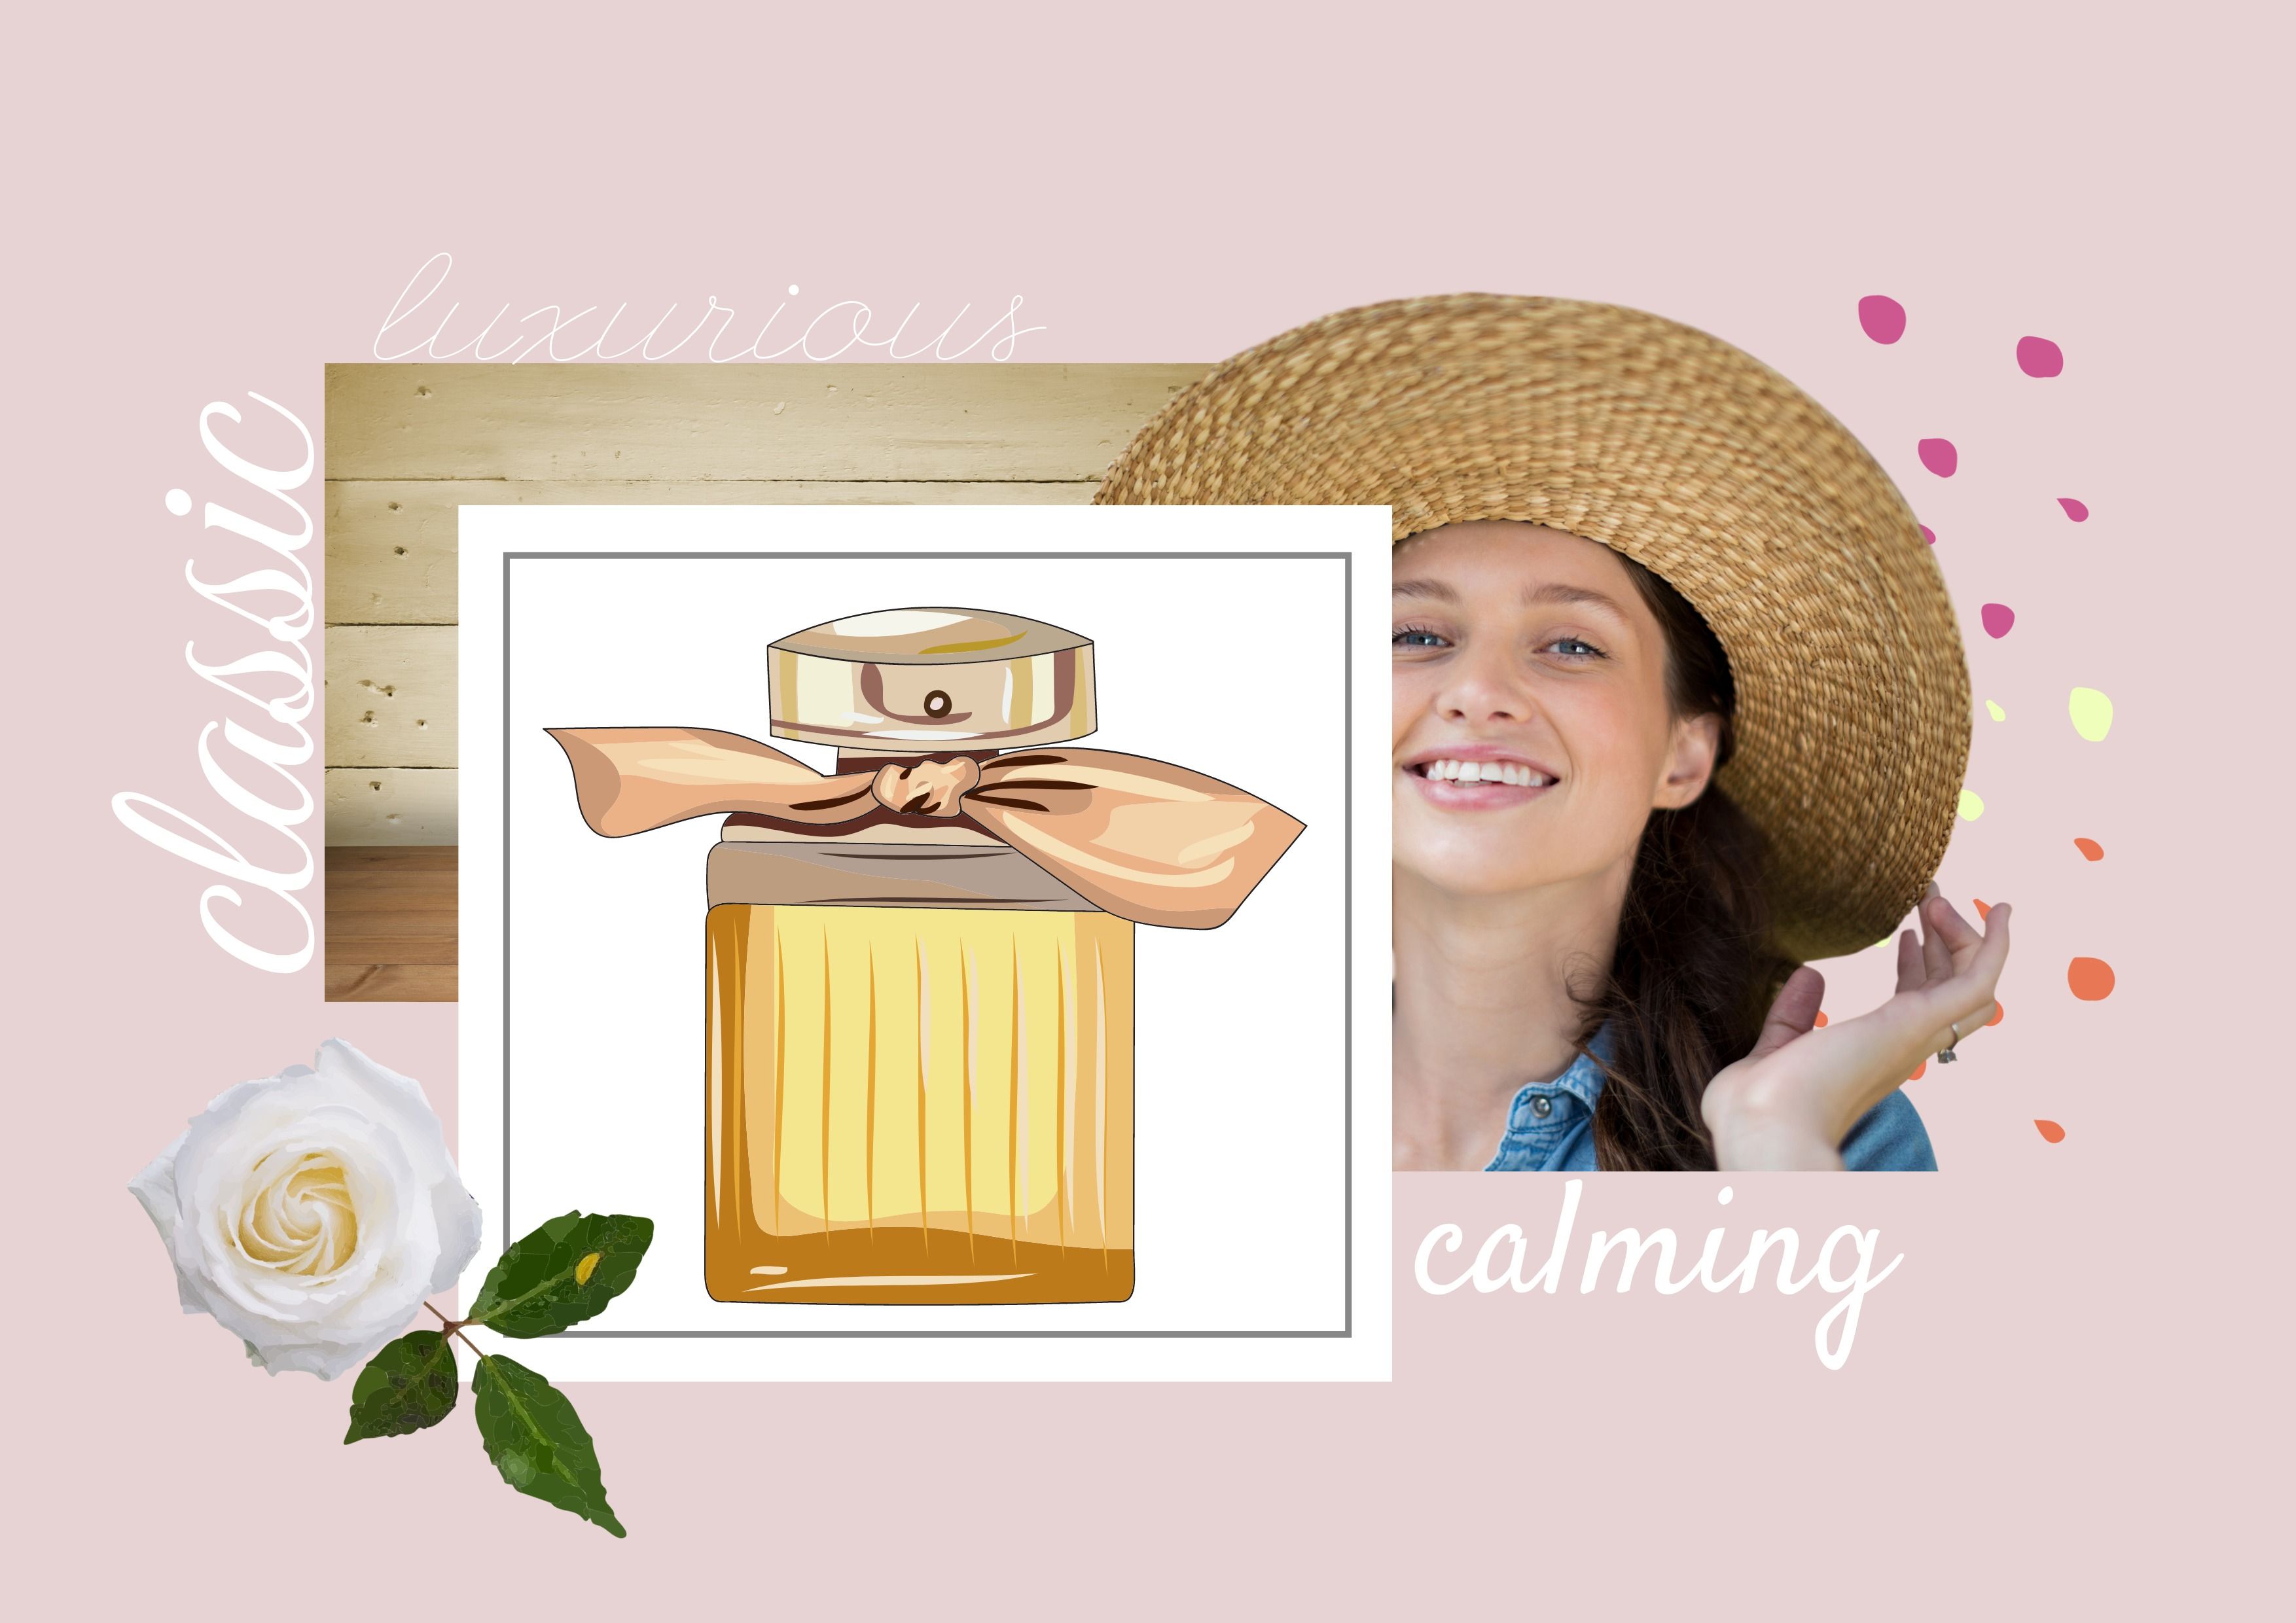 Exemplo de colagem de identidade de marca de perfume com cores, fontes e texturas estéticas